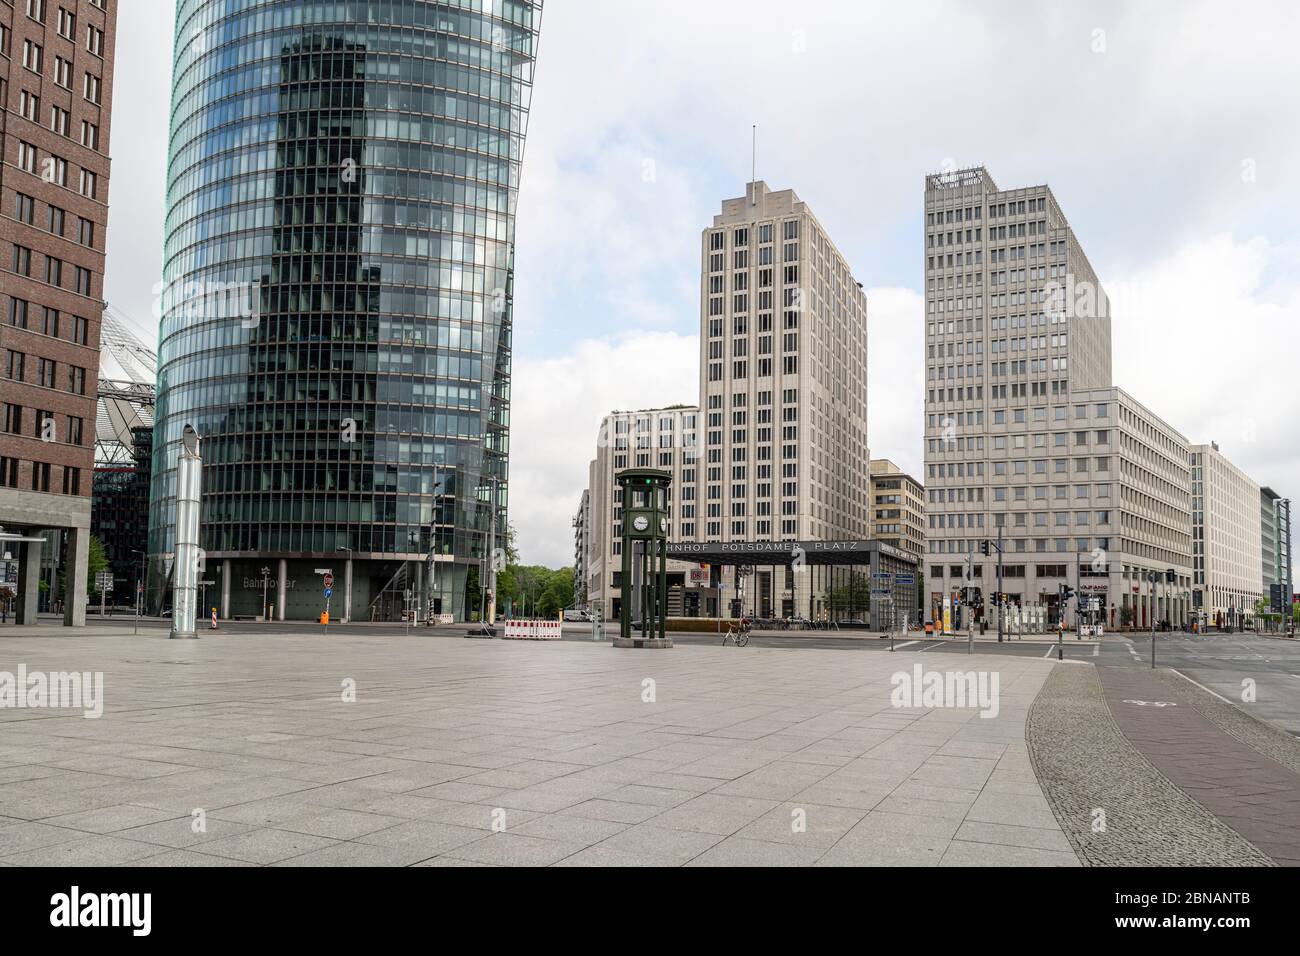 La Potsdamer Platz abrite une place publique, une gare, un carrefour, des bureaux, des hôtels et d'autres installations à Berlin, en Allemagne Banque D'Images